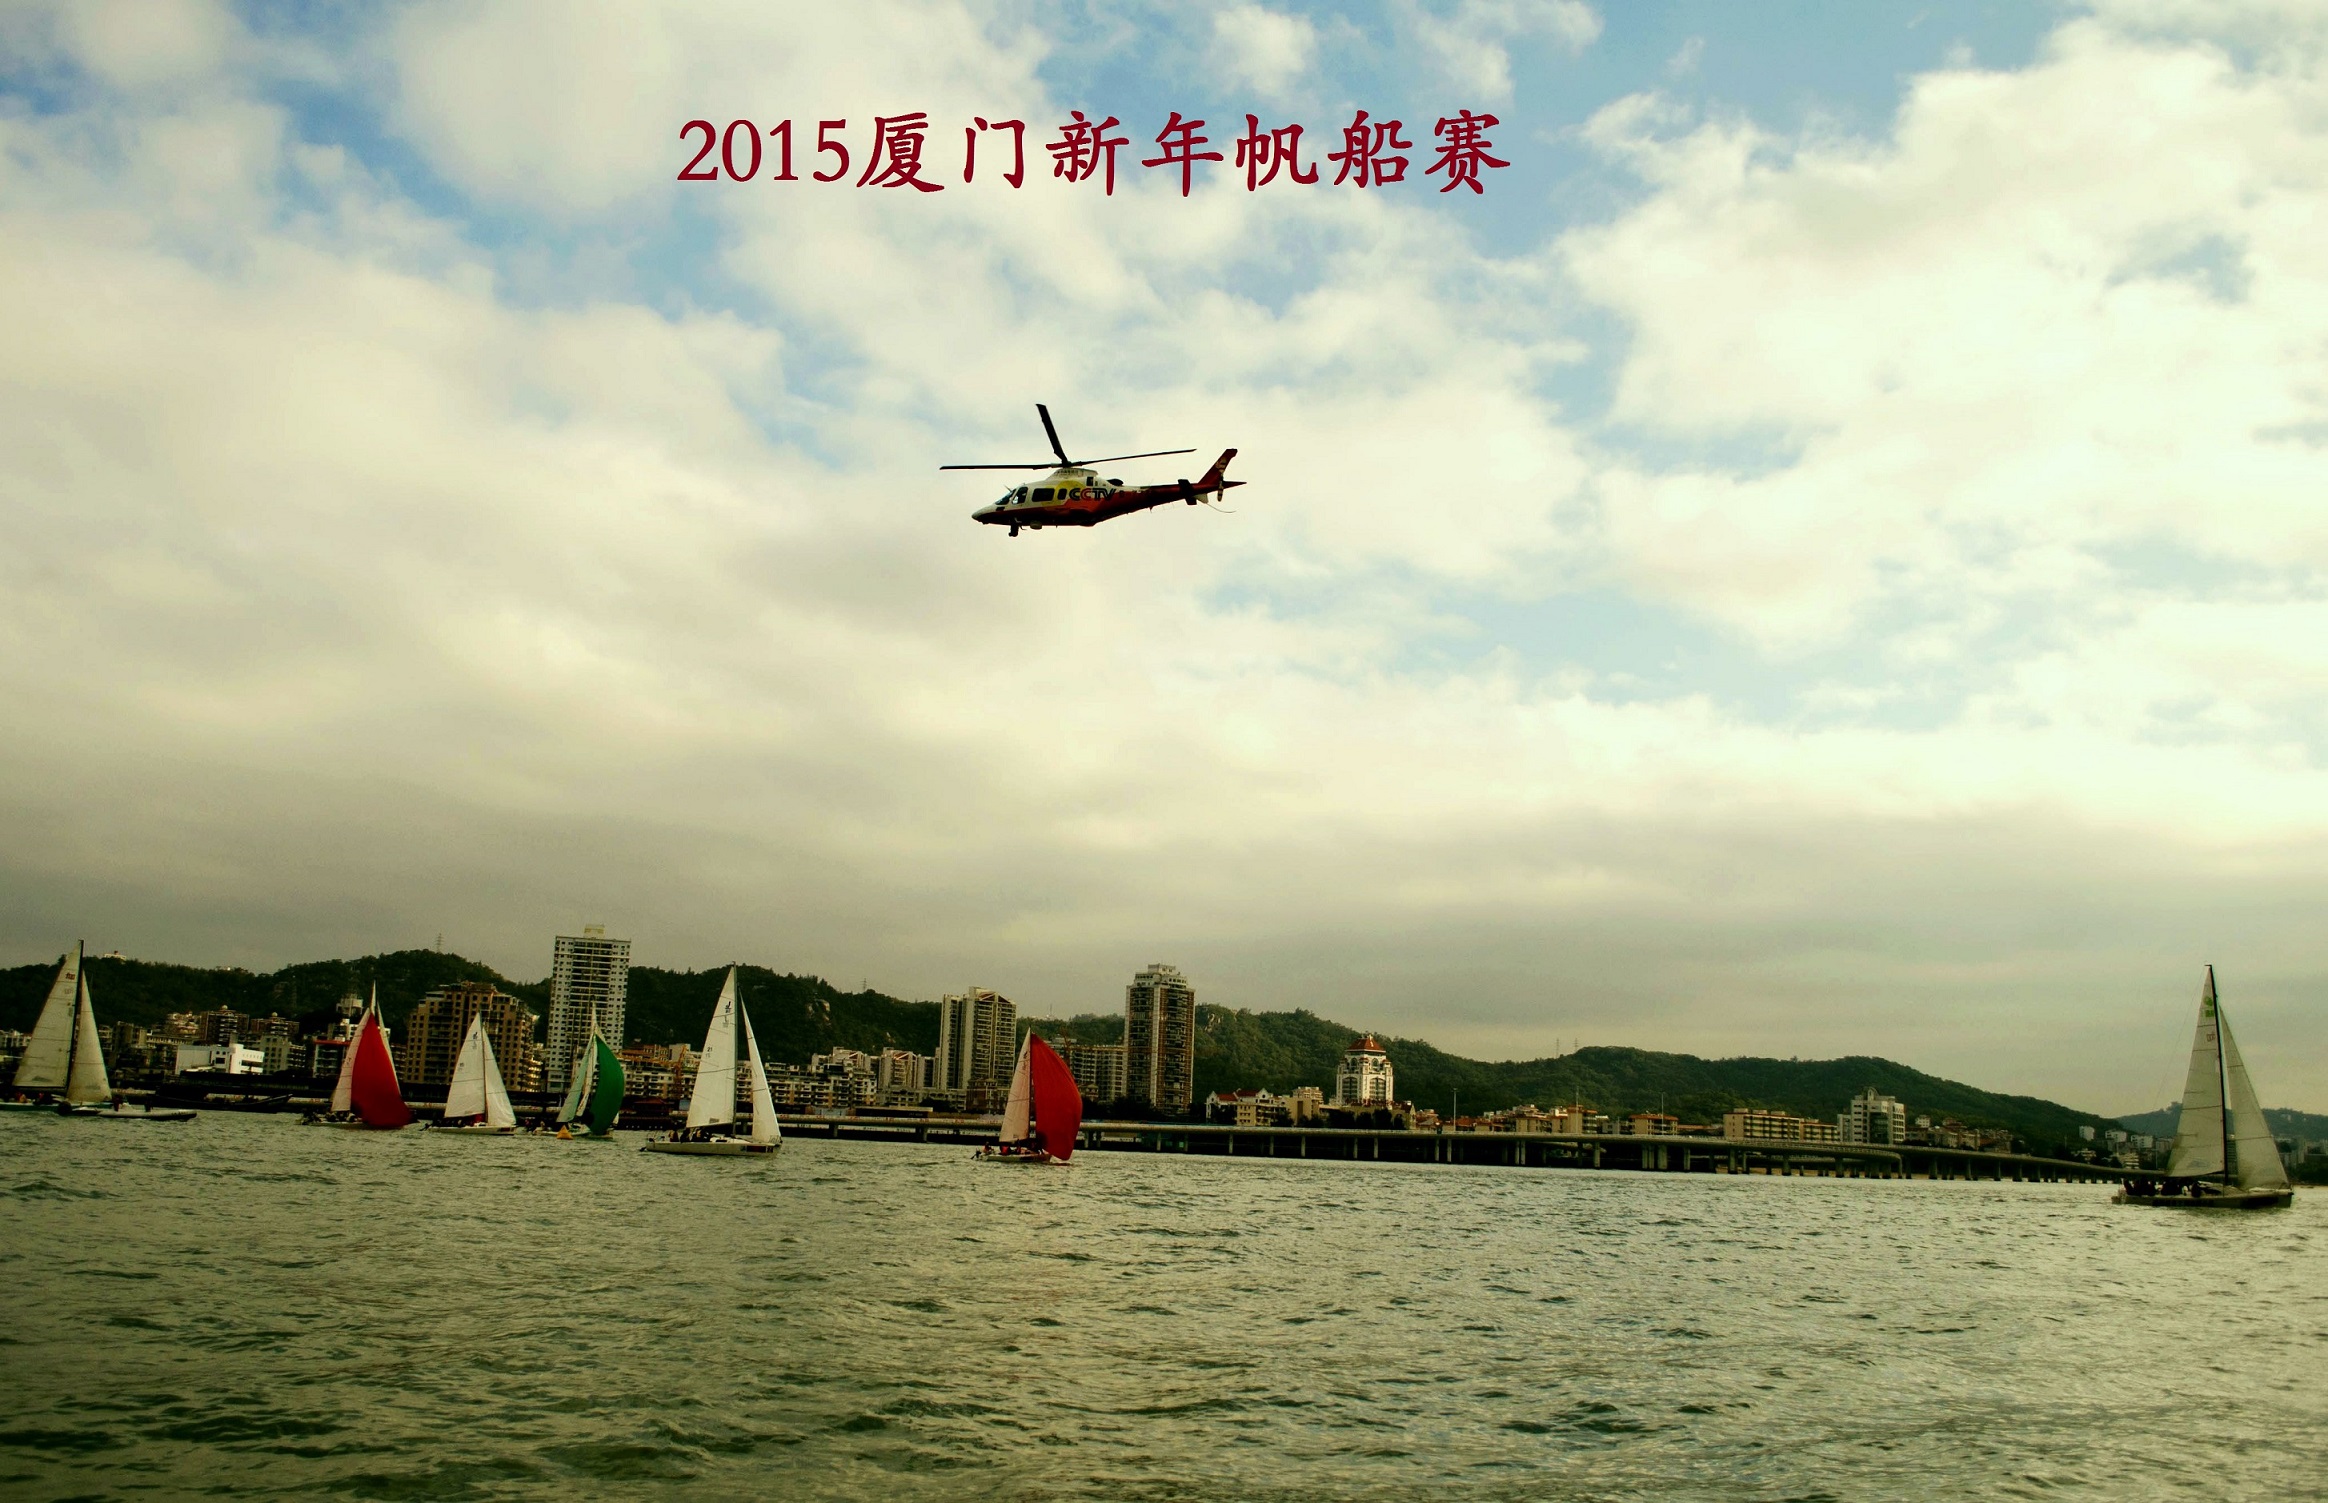 Xiamen Xiangshan International Yacht Club